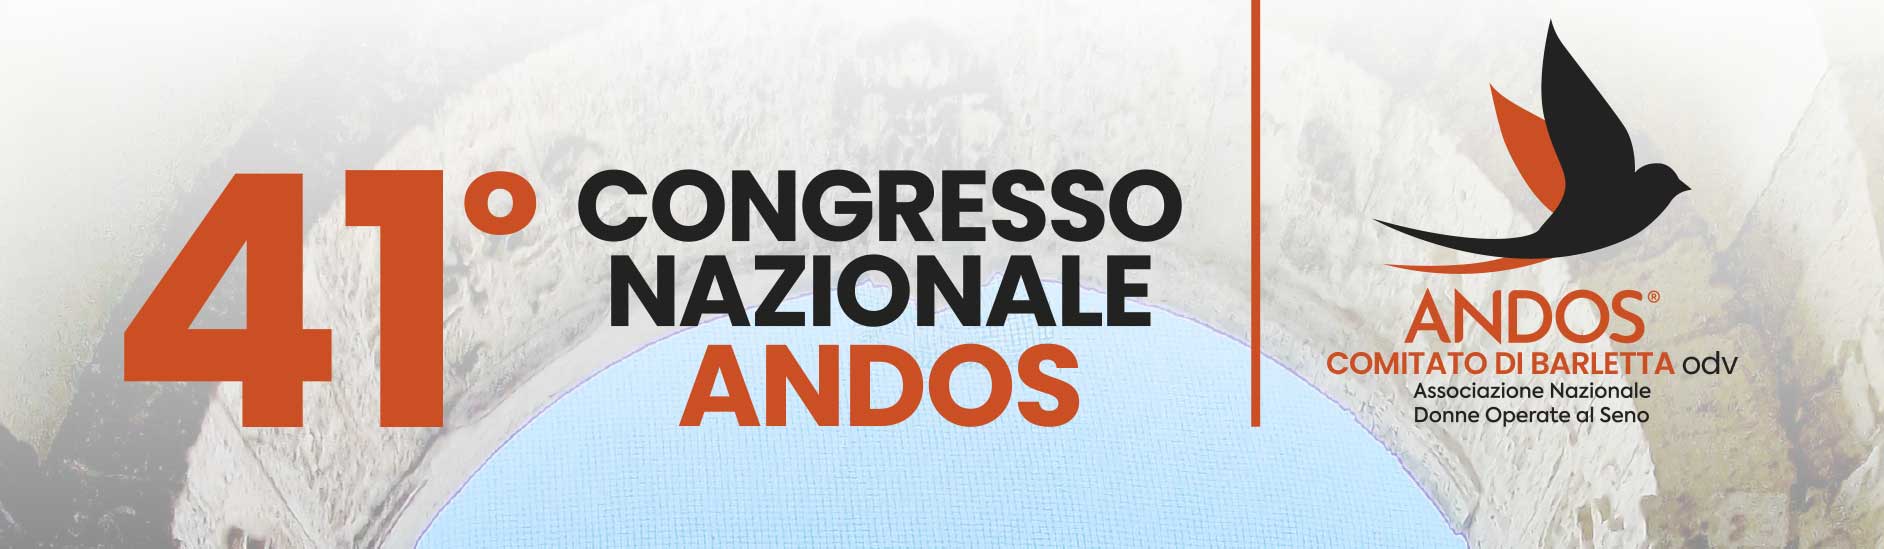 banner-41-congresso-Nazionale-ANDOS-Barletta